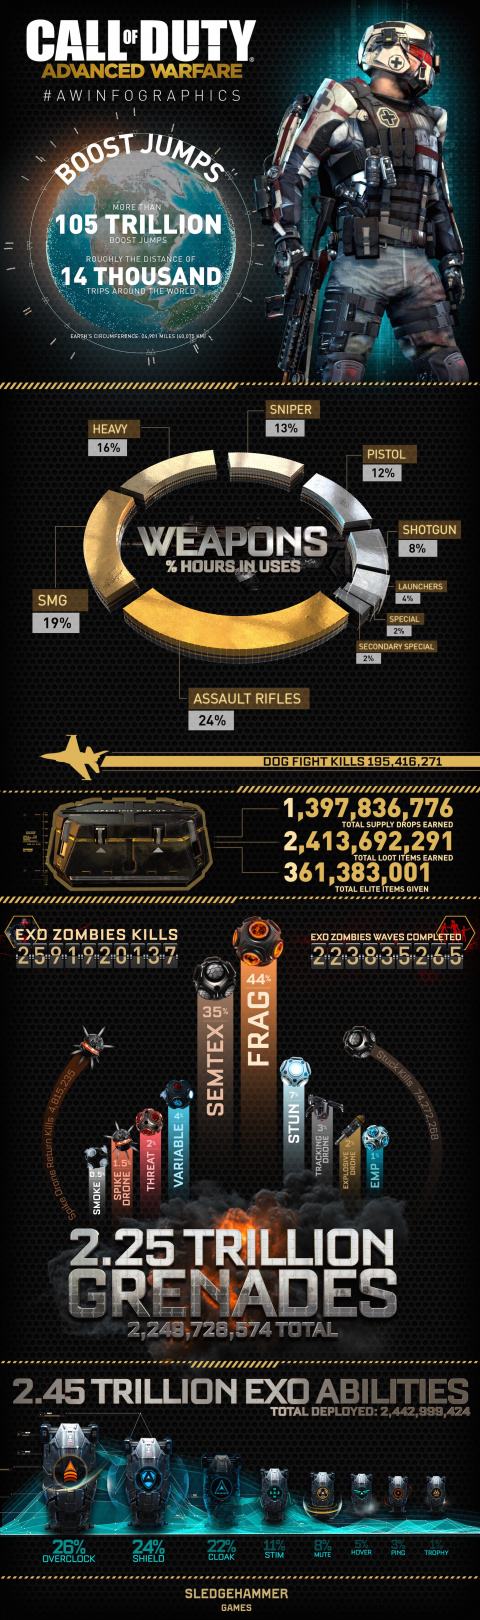 2,25 milliards de grenades lancées dans Call of Duty : Advanced Warfare